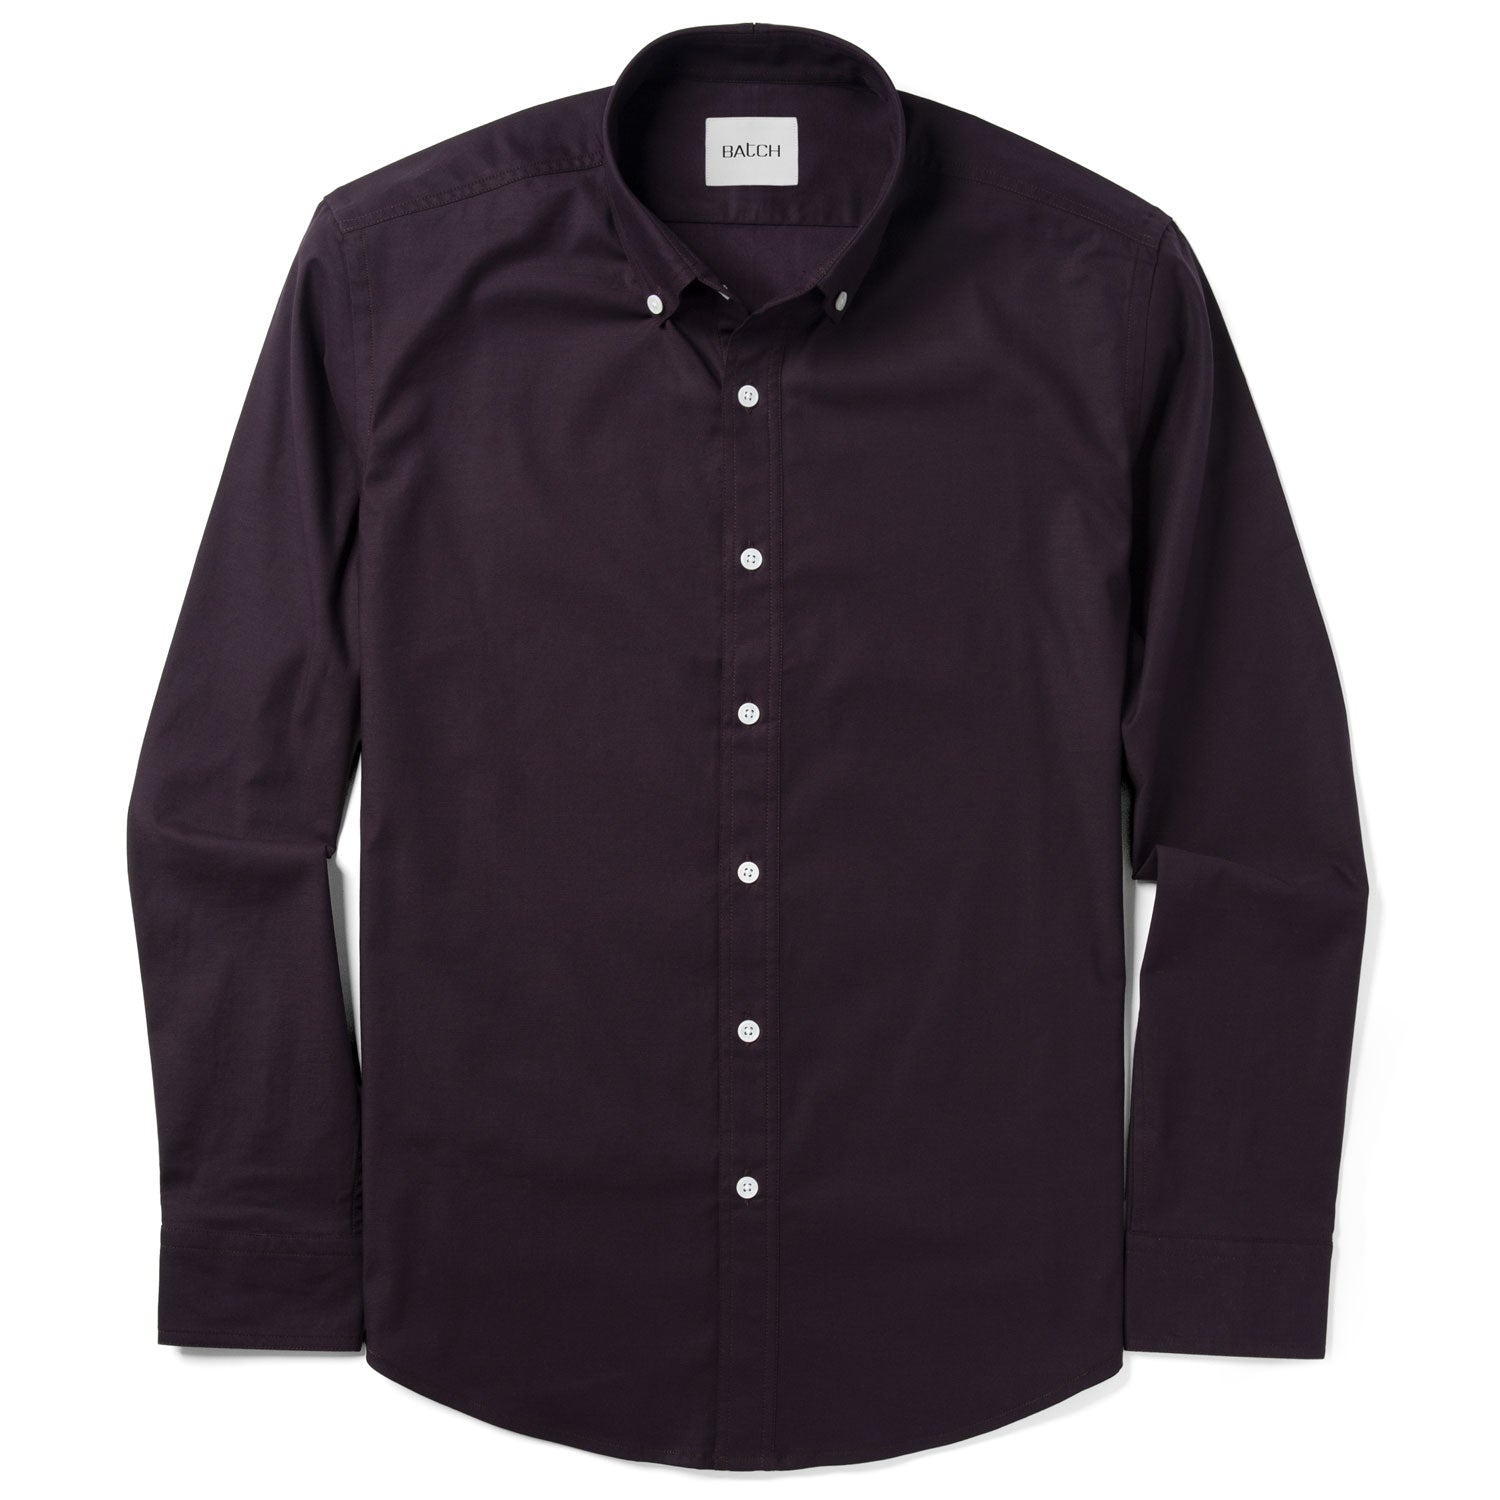 Essential Casual Shirt - WB Dark Burgundy Stretch Cotton Poplin